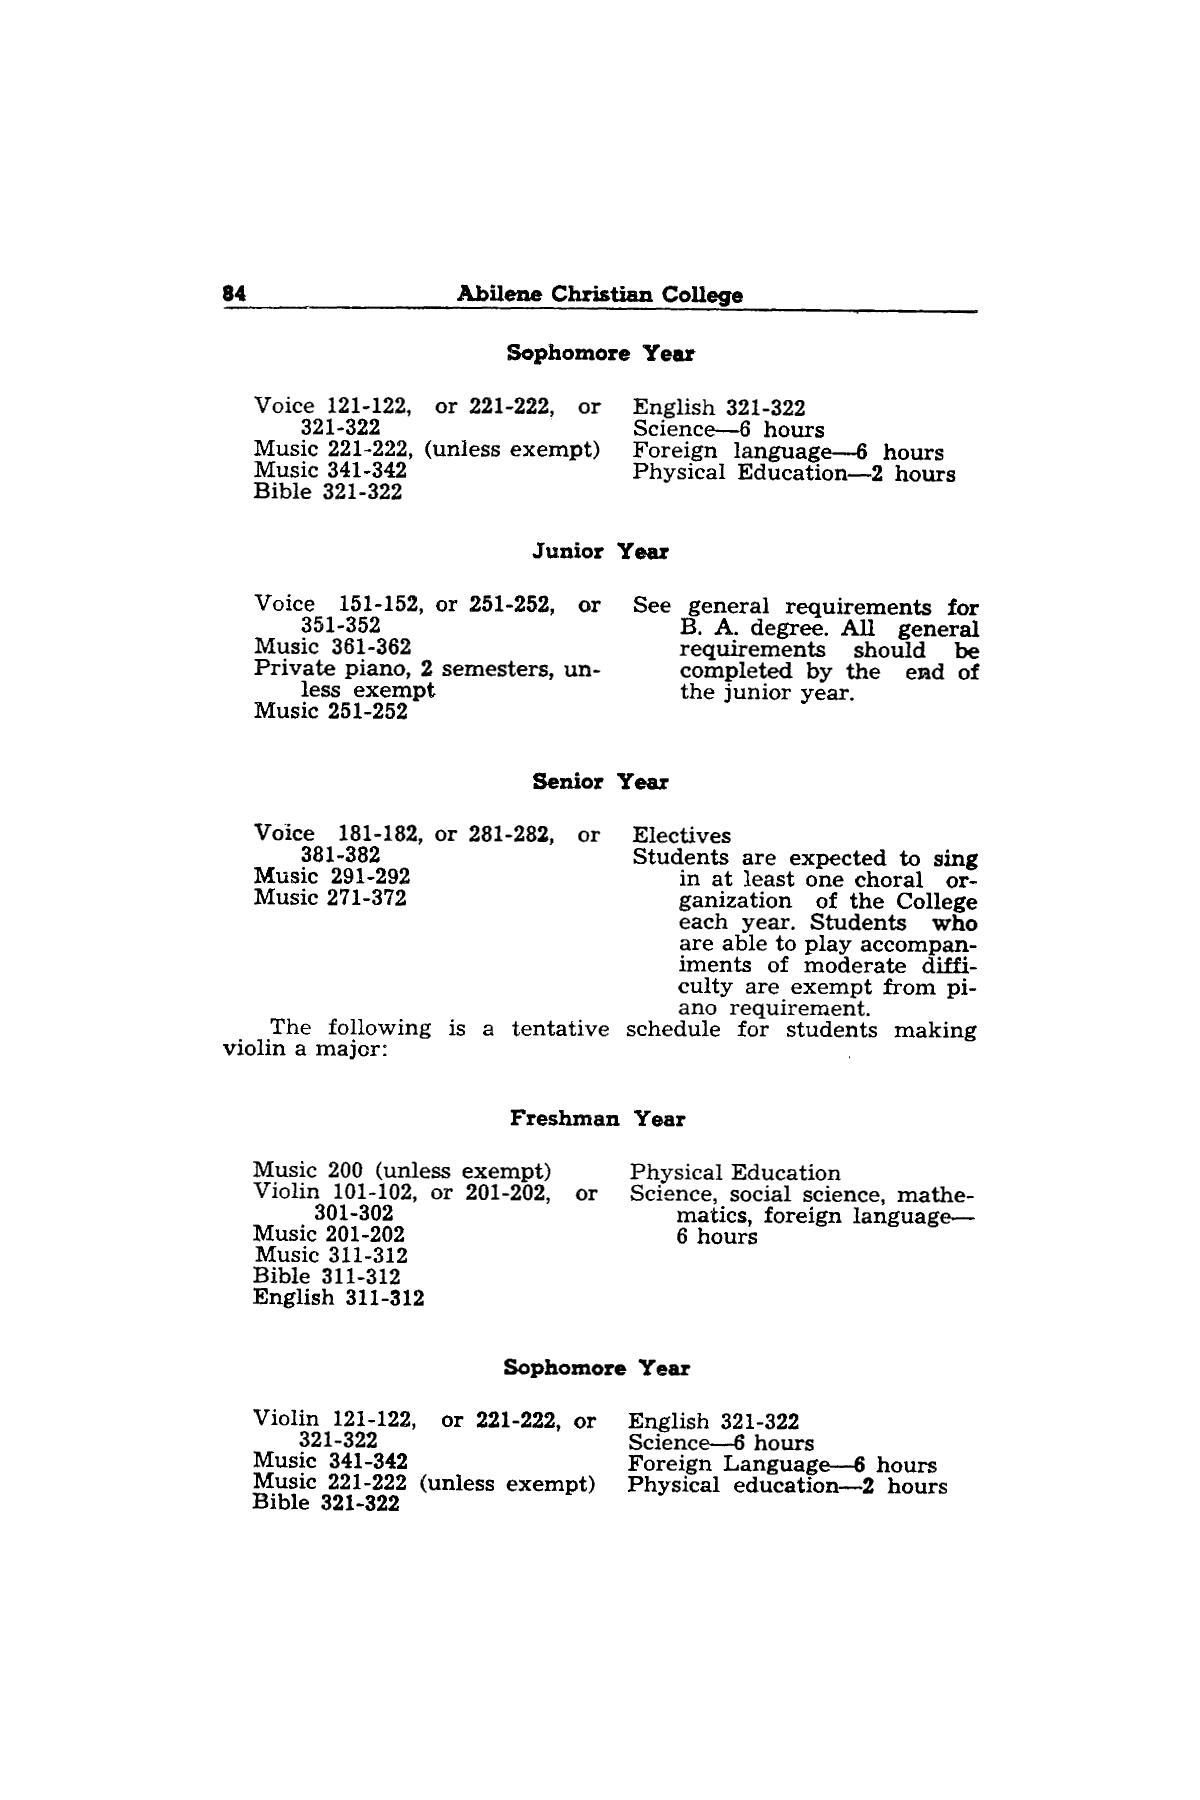 Catalog of Abilene Christian College, 1943-1944
                                                
                                                    84
                                                